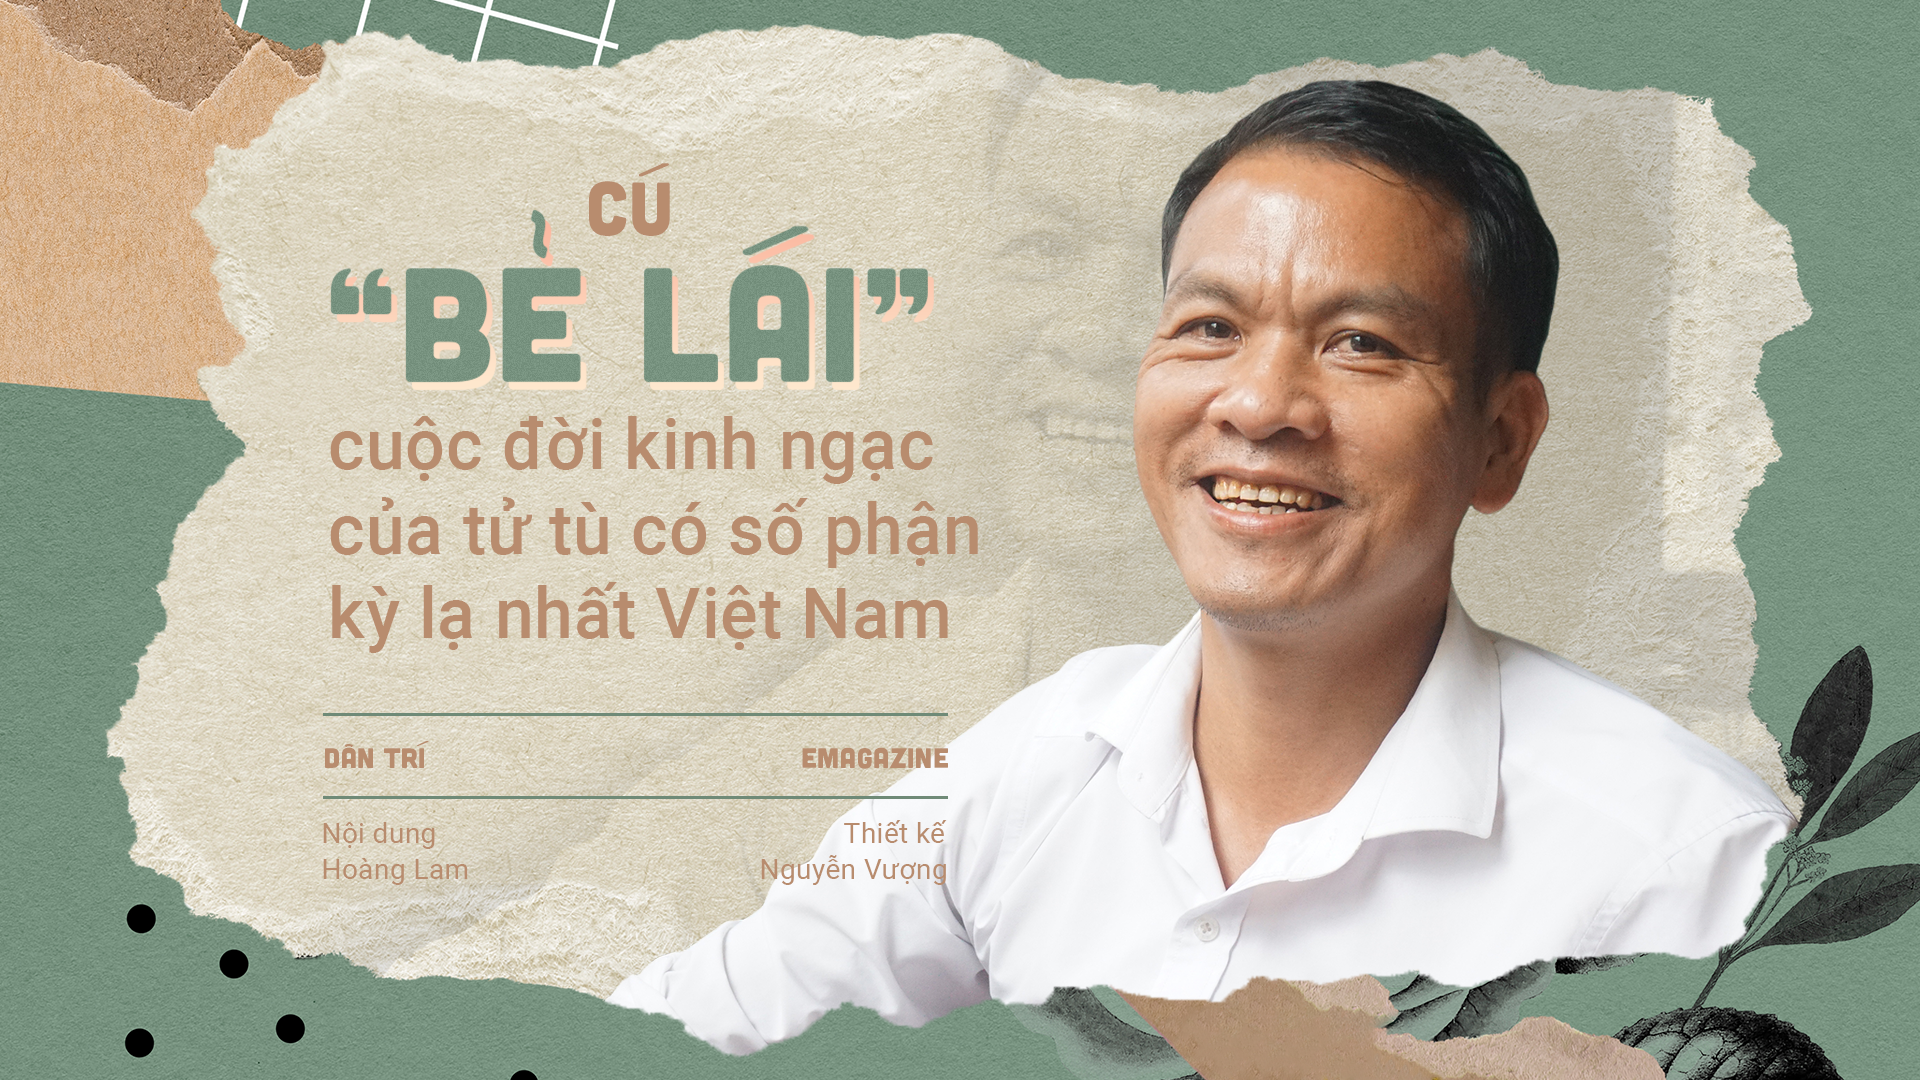 Cú "bẻ lái" cuộc đời kinh ngạc của tử tù có số phận kỳ lạ nhất Việt Nam